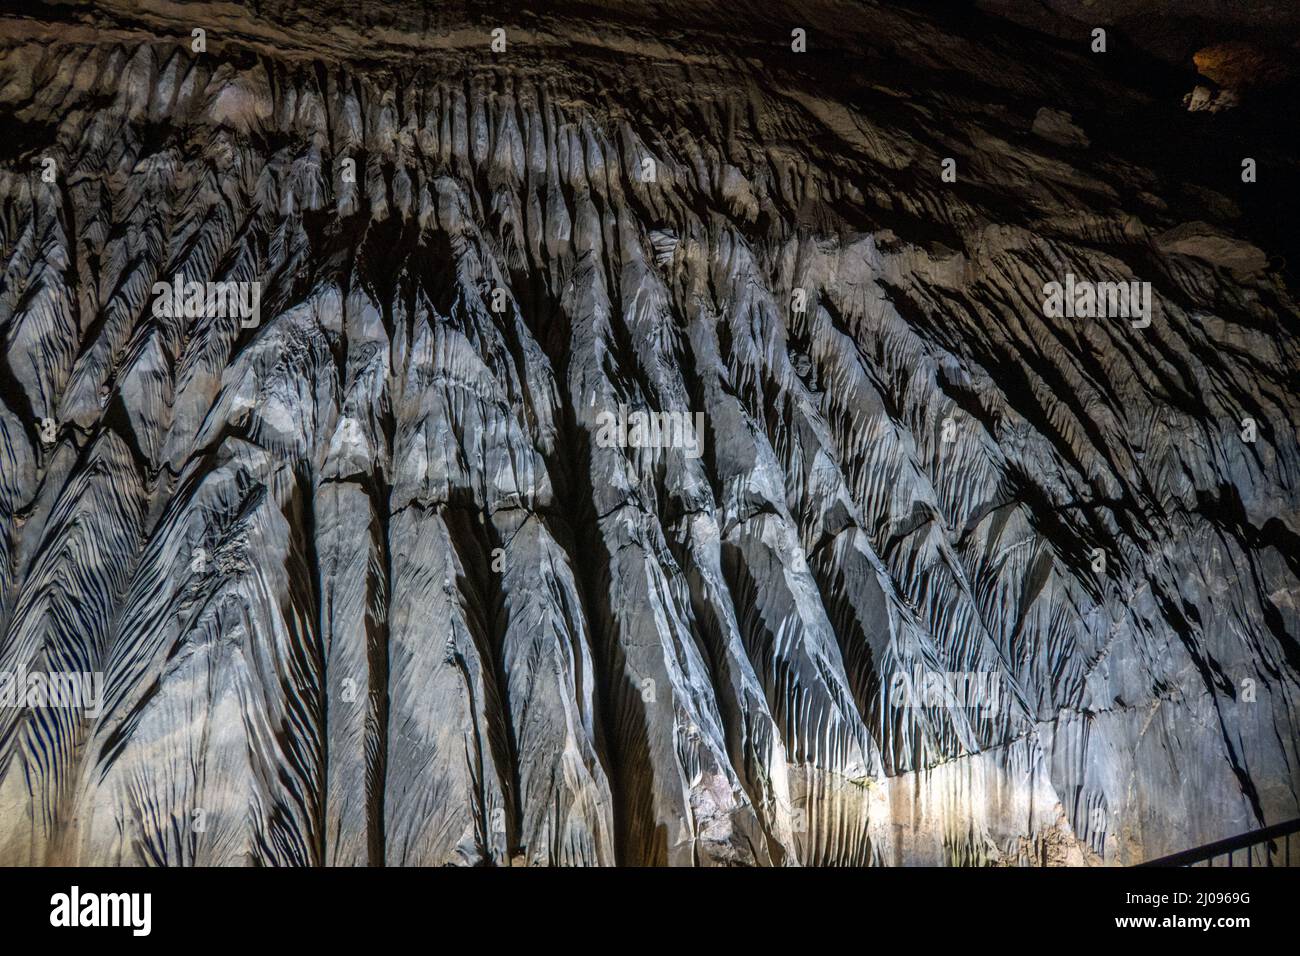 Regno Unito, Inghilterra, Somerset, Wookey Hole Caves. Rillenkarren o fluting causato da acqua che scorre sopra la roccia calcarea nella grotta 20. Foto Stock